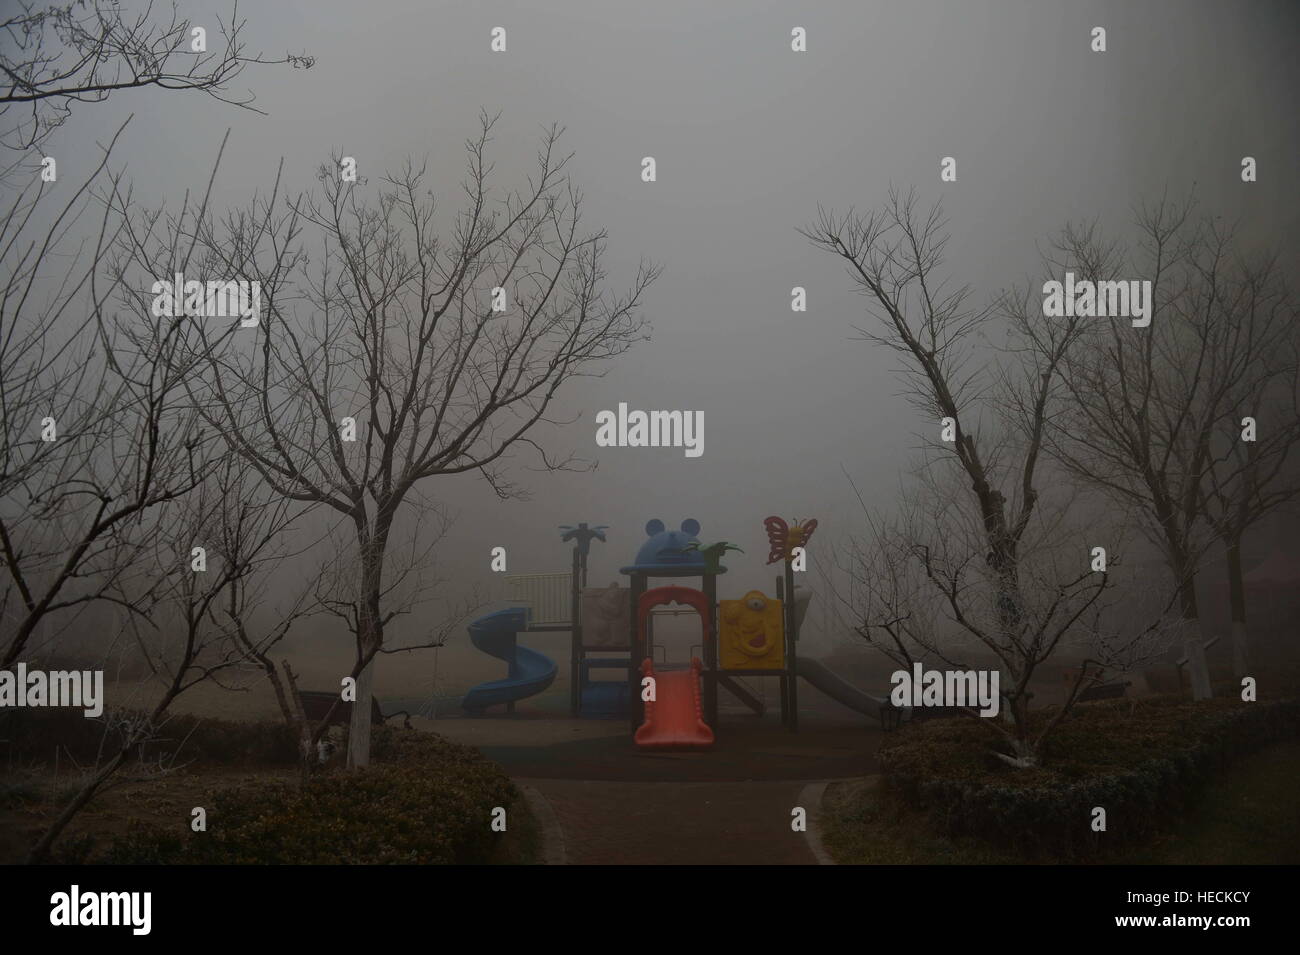 Tianjin, Chine. Dec 19, 2016. Photos prises le 19 décembre 2016 montre les installations publiques enveloppé dans le smog à Tianjin, Chine. Le smog grave continué de linceul du nord de la Chine et même aggravée fin lundi, perturbant la vie dans des dizaines de villes. © Xinhua/Alamy Live News Banque D'Images